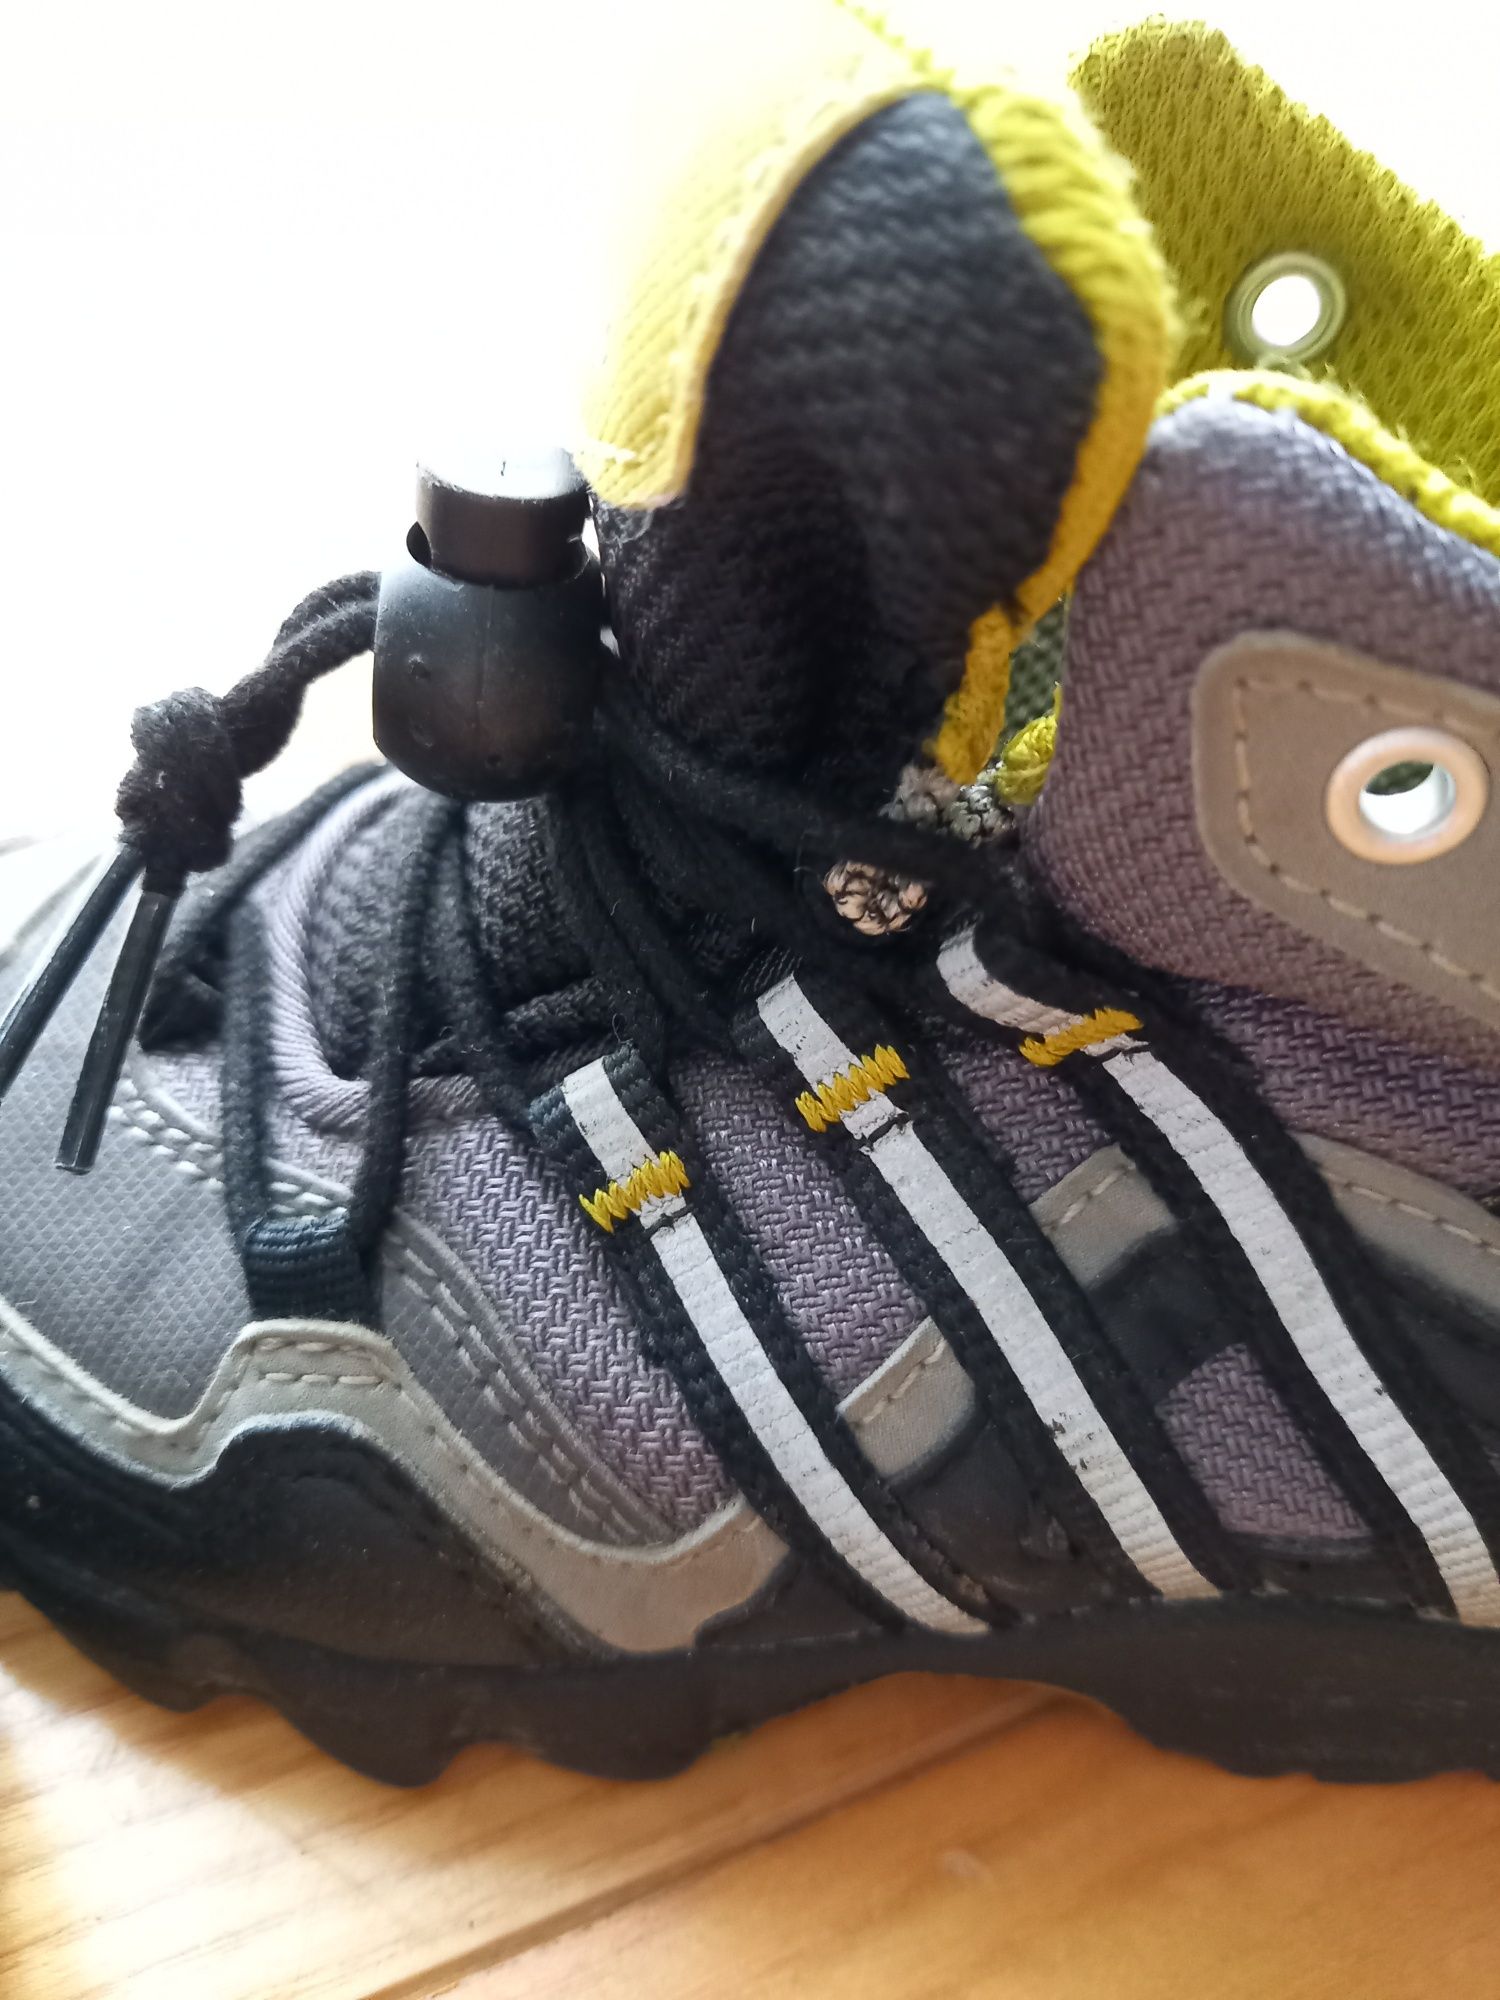 Adidas buty przejściowe trekkingowe wiosna chłopiec 24